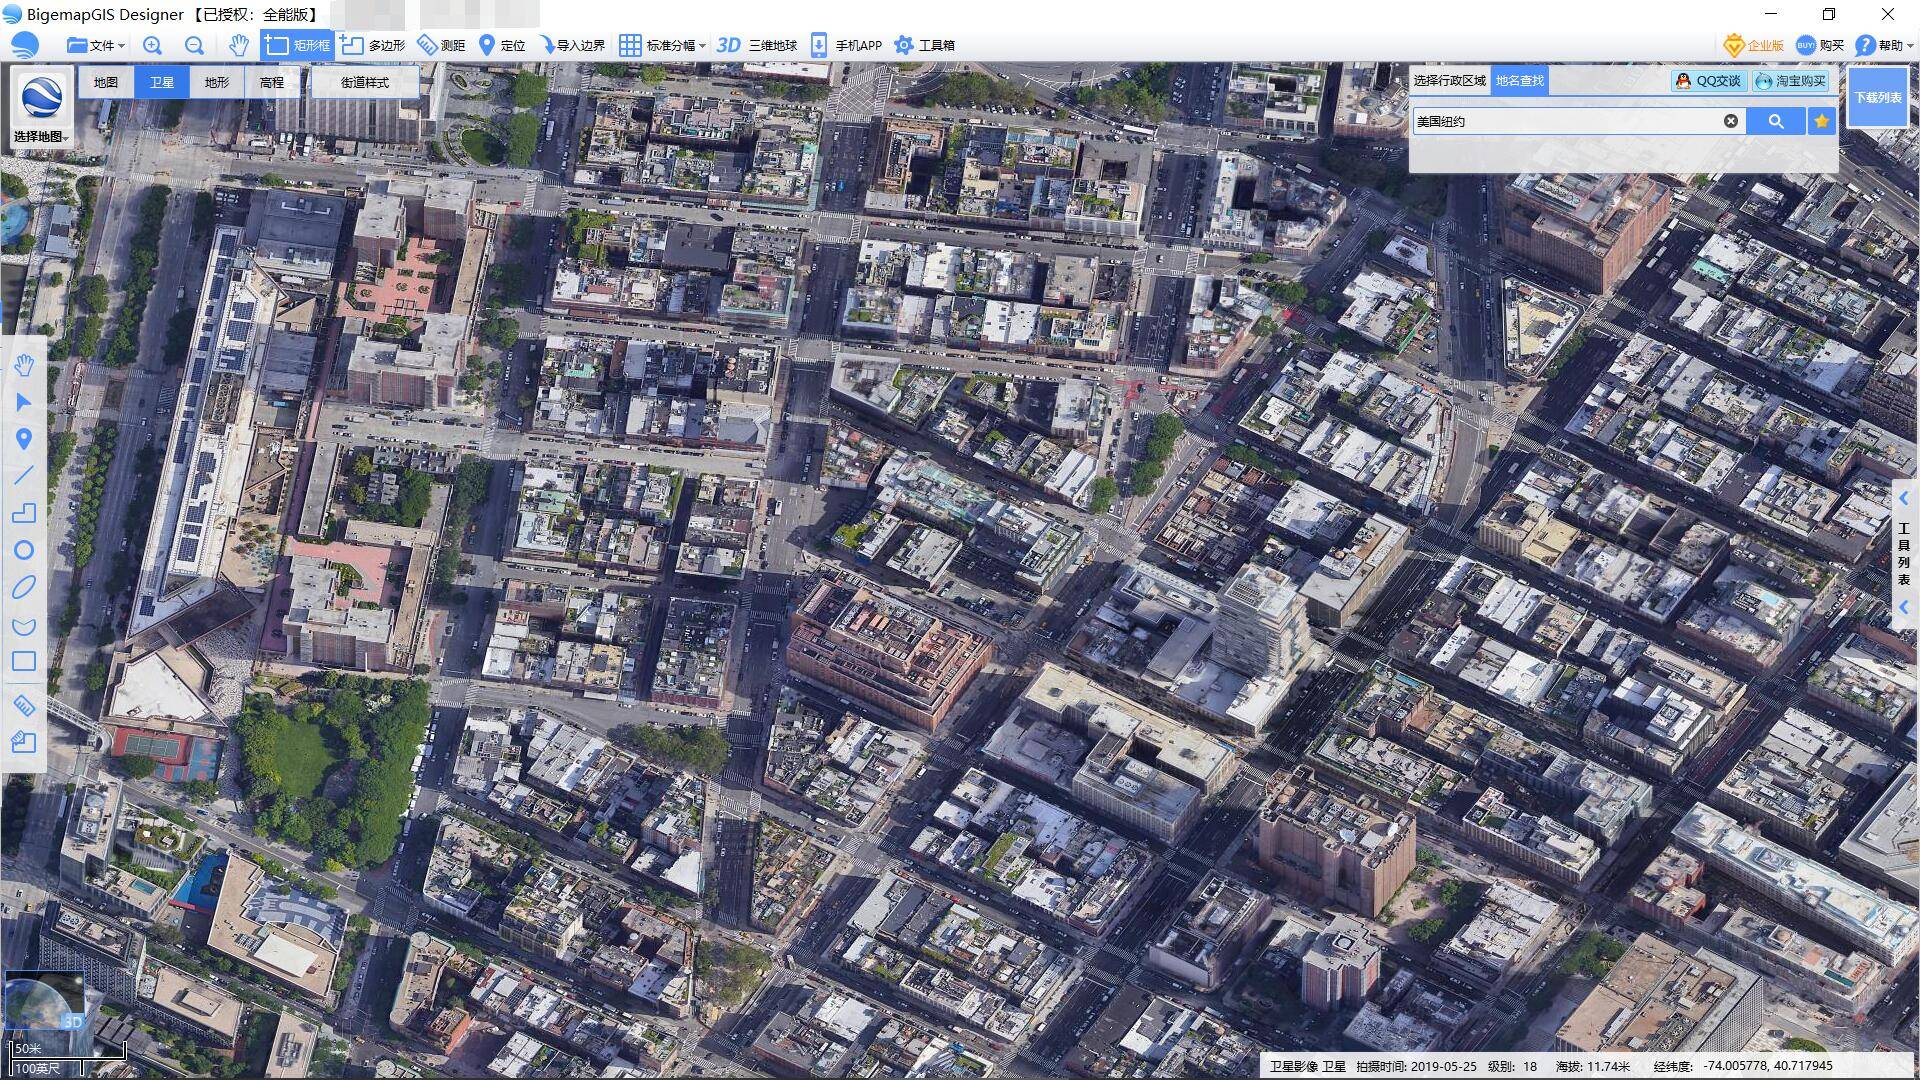 和谷歌地球同一数据来源的国产软件——bigemap大地图上的纽约,卫星